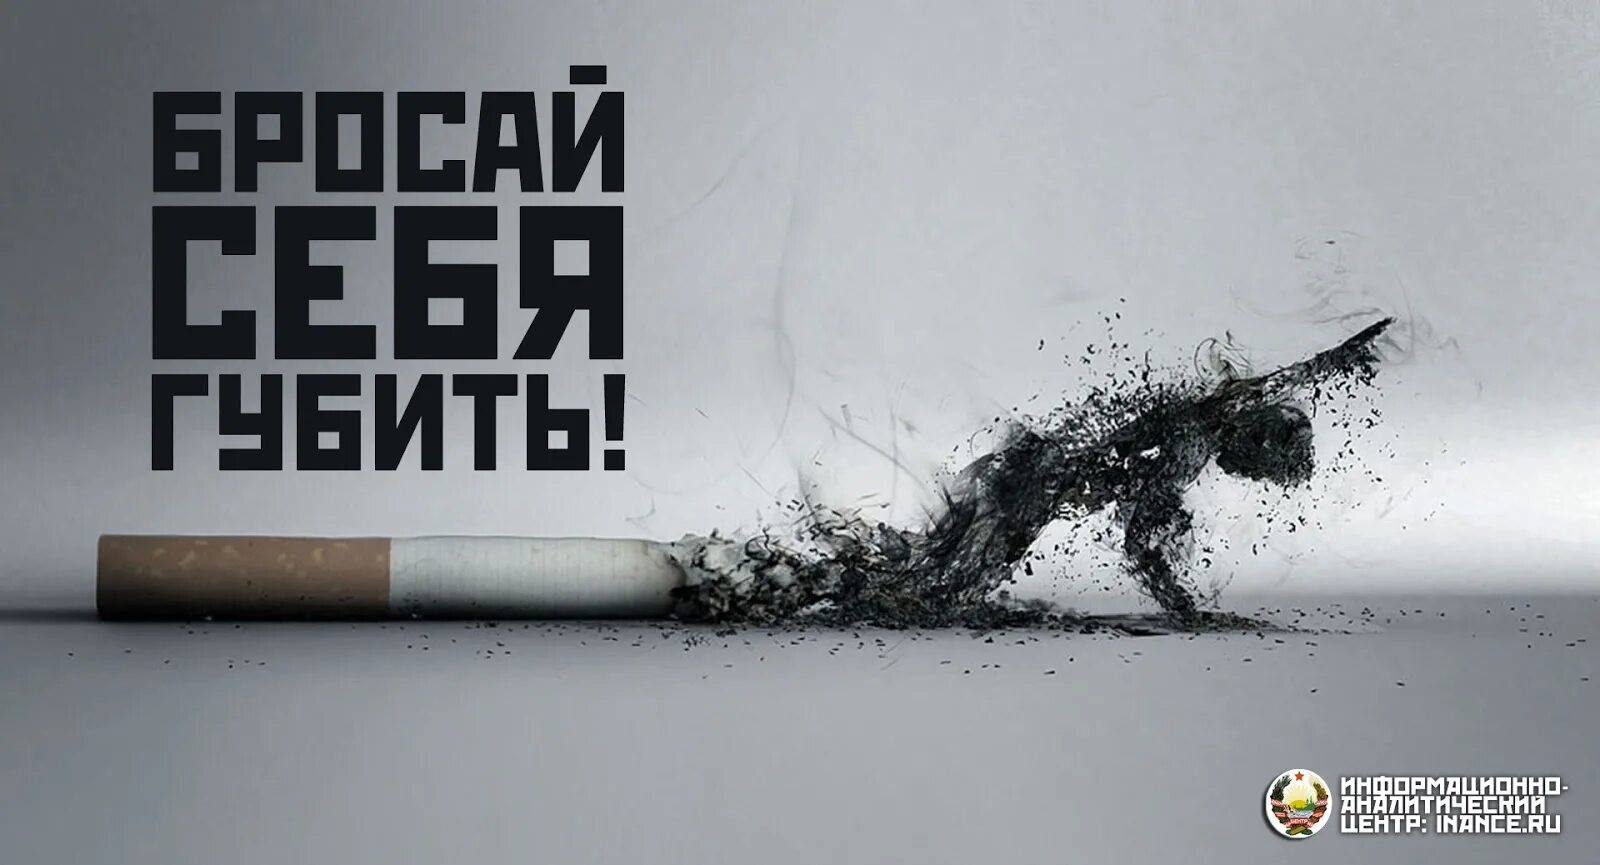 Борьба за хорошую жизнь. Против курения. Плакат против курения. Против сигарет. Баннер против курения.